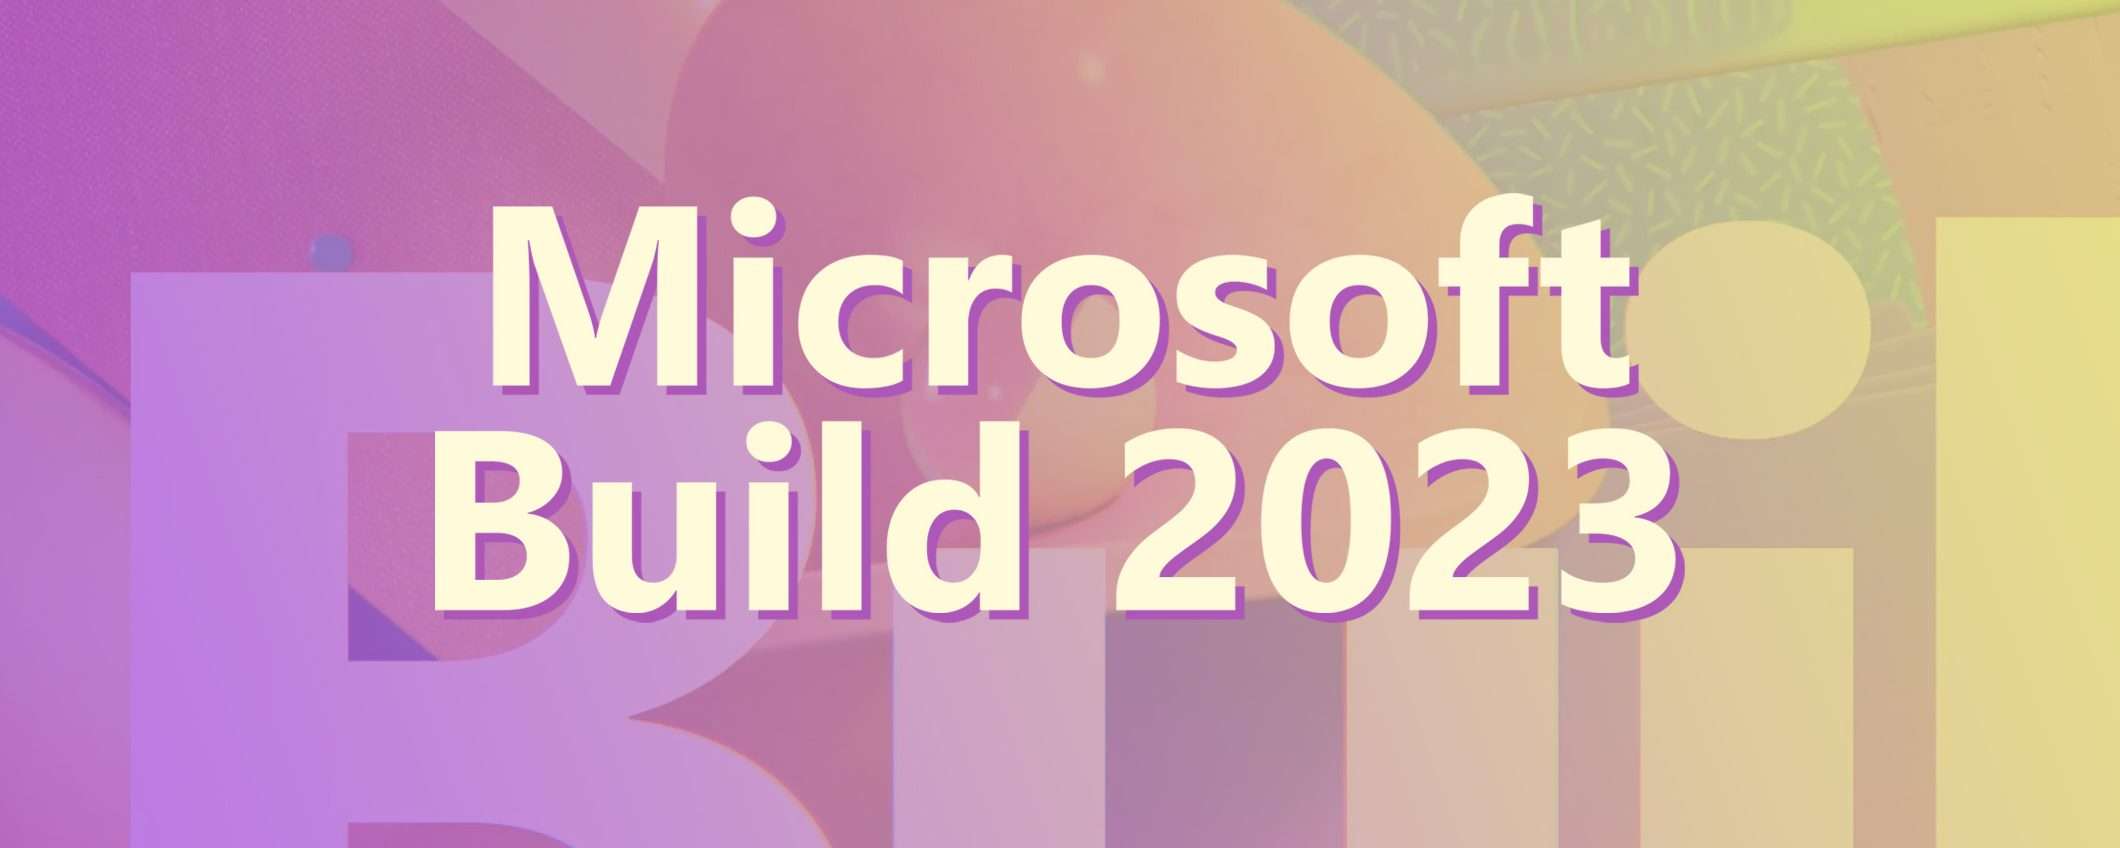 Build 2023: l'all-in di Microsoft sull'IA